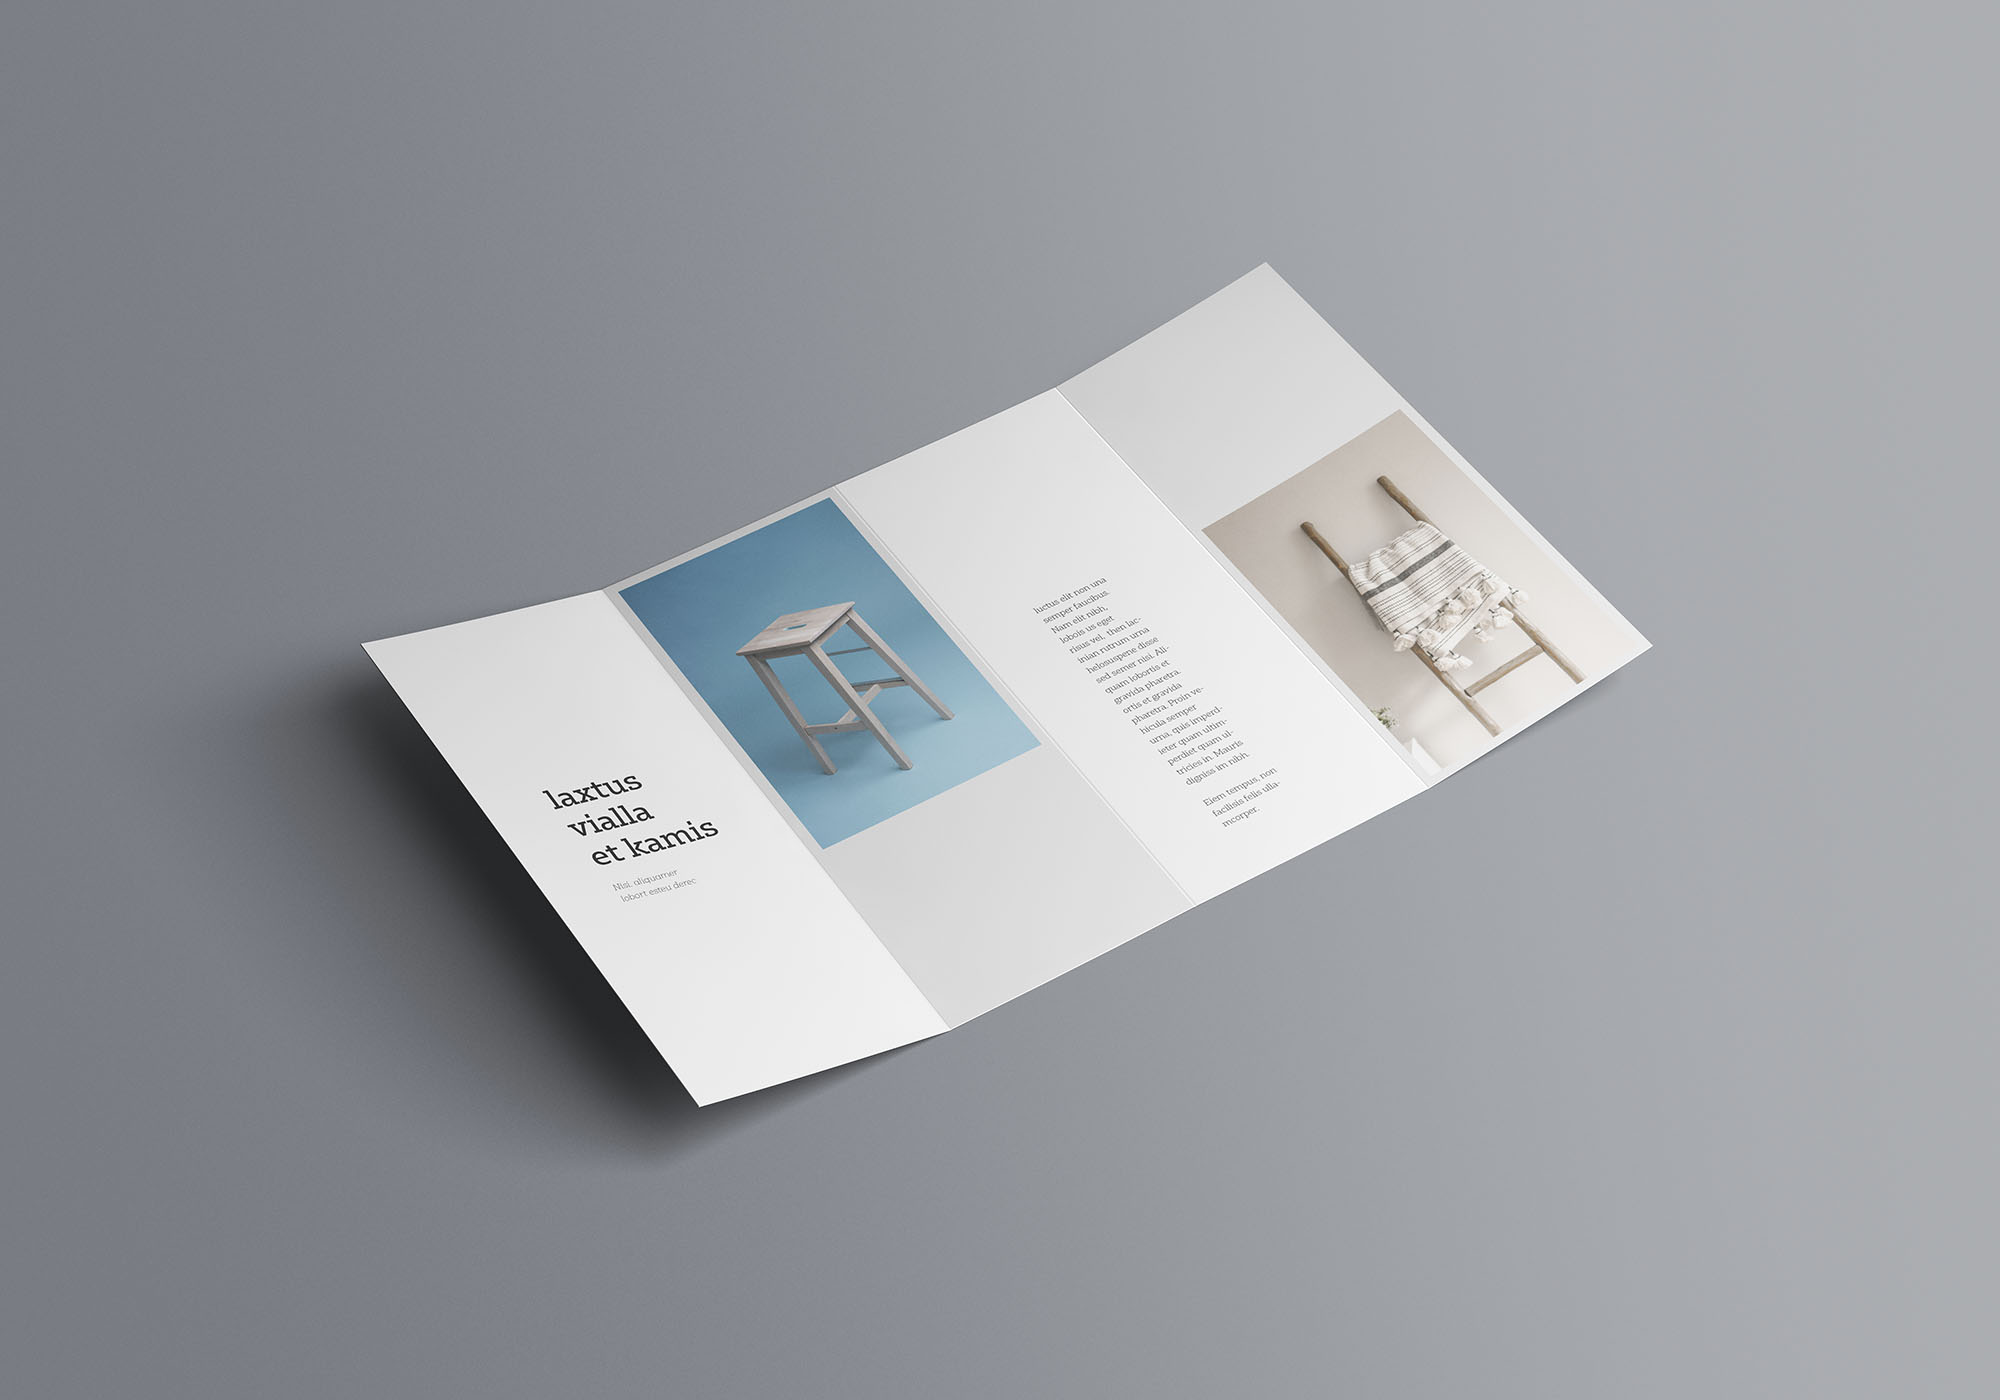 双门折叠宣传册设计效果图样机模板 Double Gatefold Brochure Mockup插图(2)